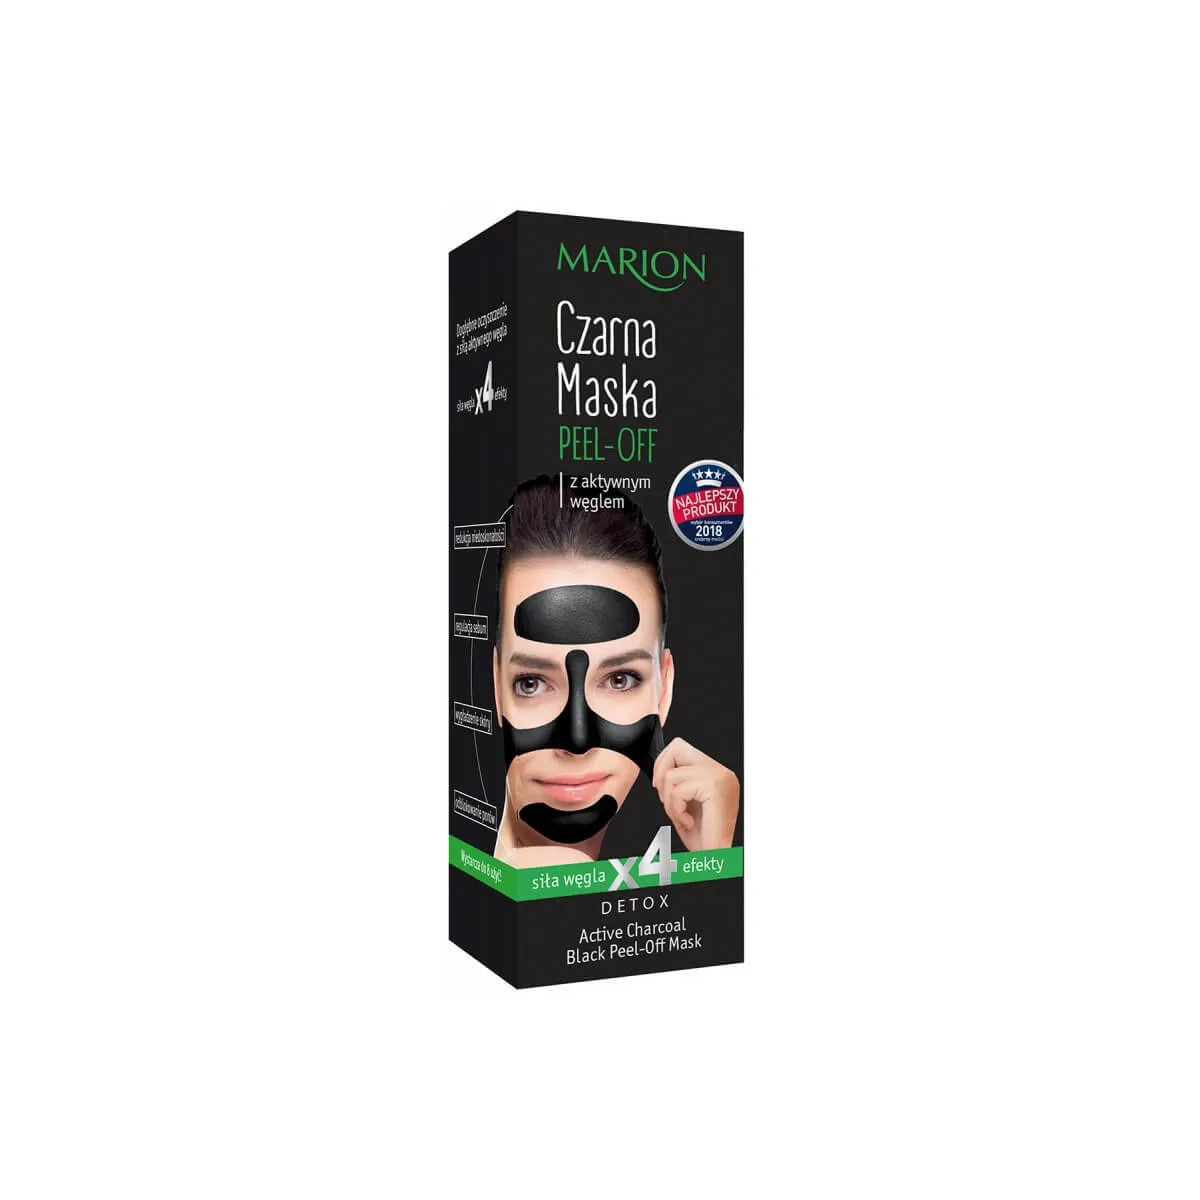 Marion Peel Off,  czarna maska do twarzy peel-off z aktywnym węglem, 25 g